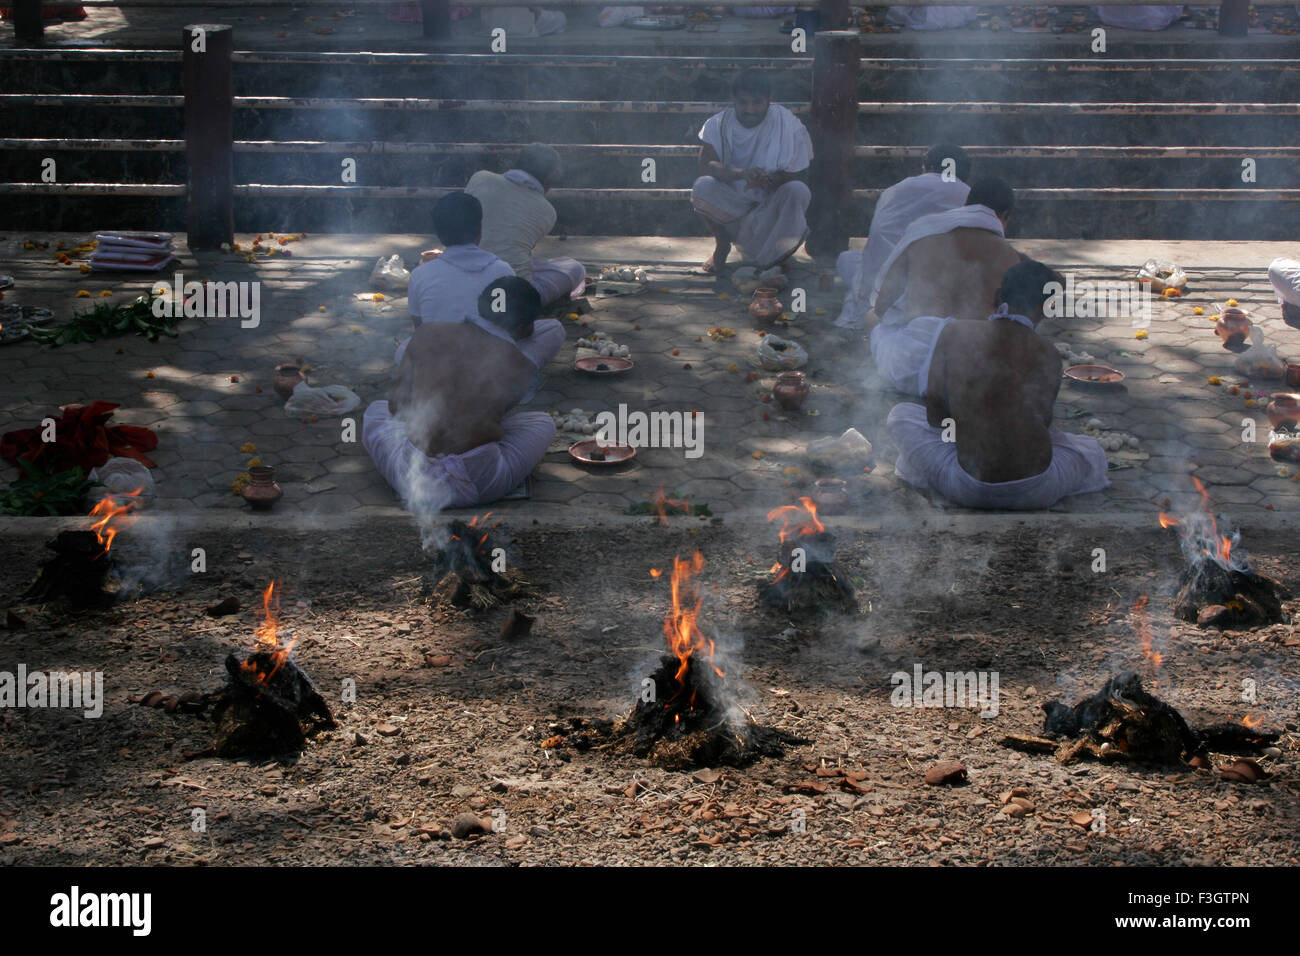 Traditionelle und übliche Zeremonien genannt Shraad Puja durchgeführt durch sieben indische Männer inmitten Feuer Rauch geliebten Trambak Nashik Stockfoto